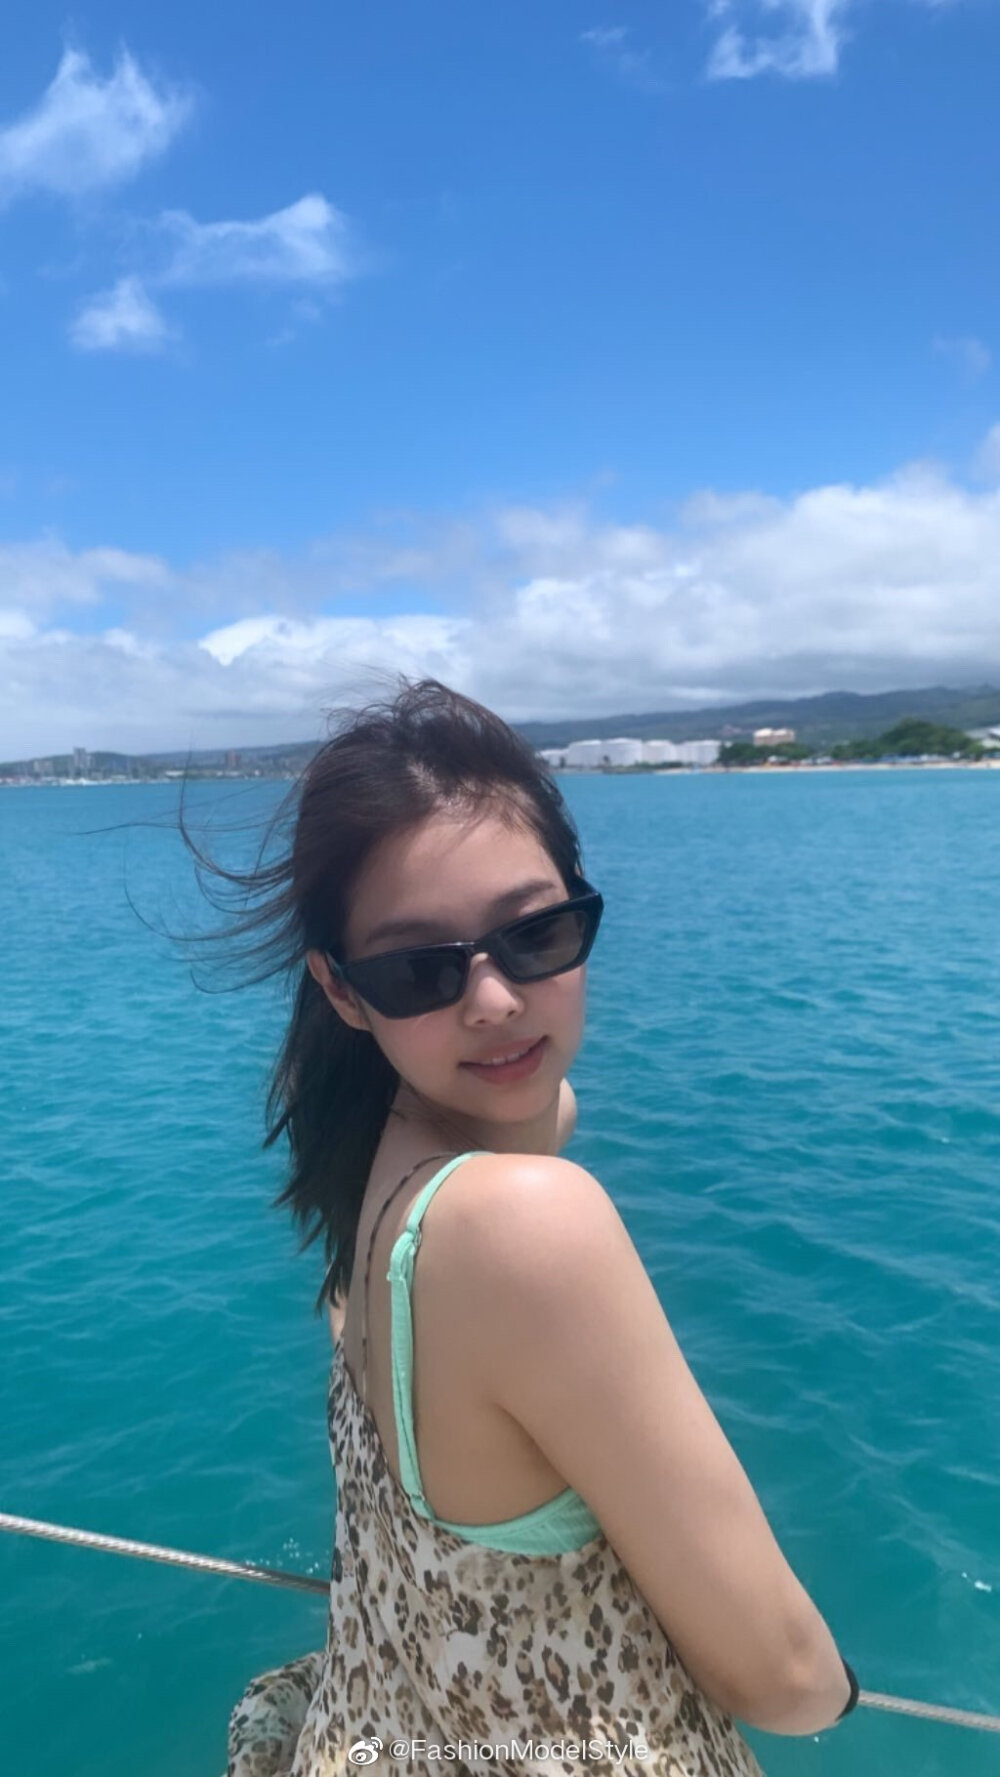 jennie[超话]#peaceceleb korea style | jennie insta夏威夷旅拍